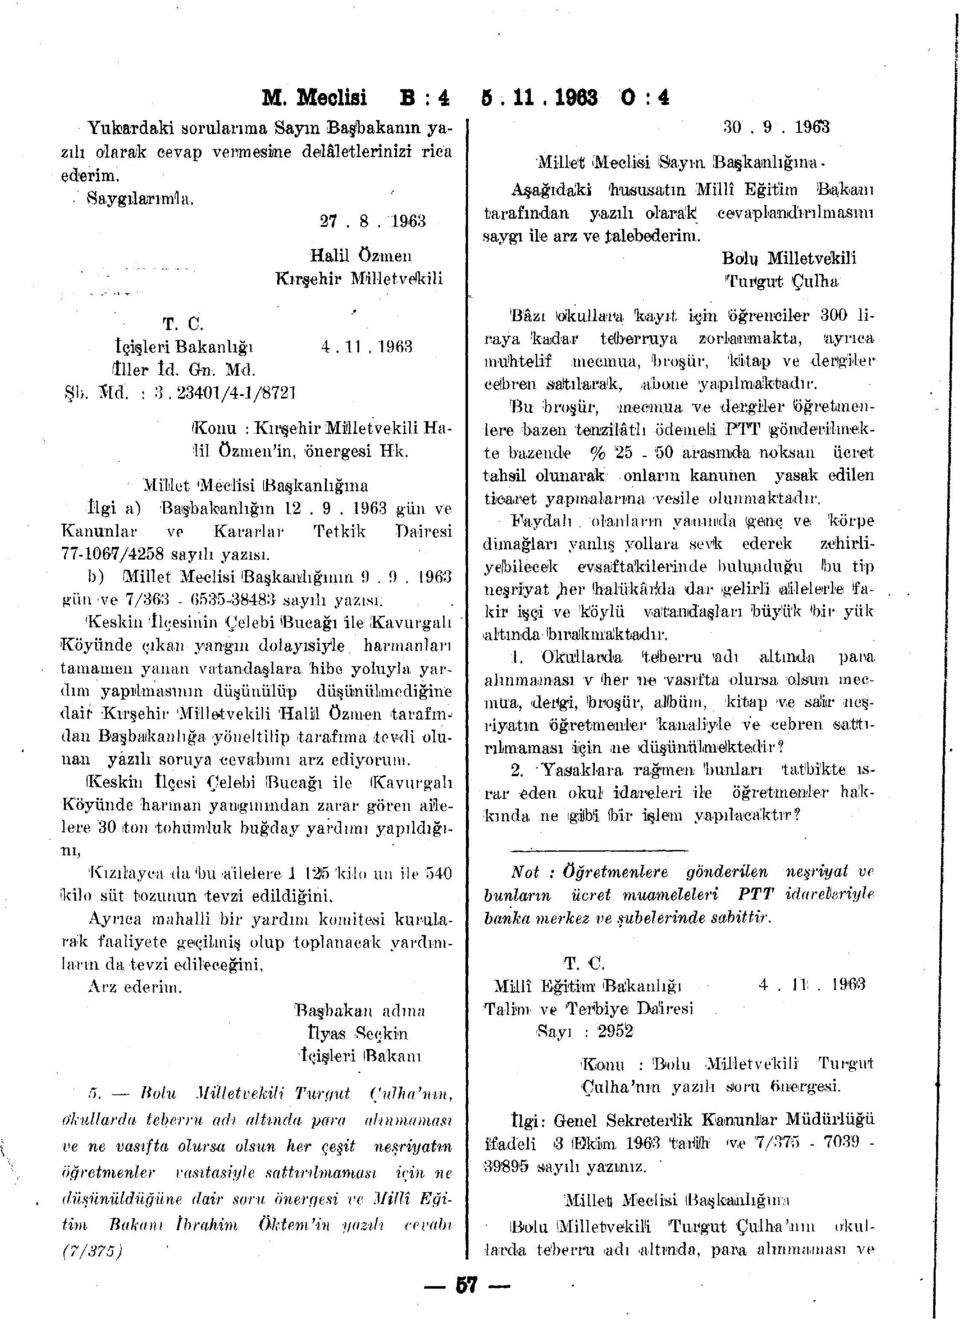 1963 gun ve Kanunlar ve Kararlar Tetkik Dairesi 77-1067/4258 sayılı yazısı. b) (Millet Meclisi Başkanlığının 9.9. 1963 gün >ve 7/363-6535-38483 sayılı yazısı.